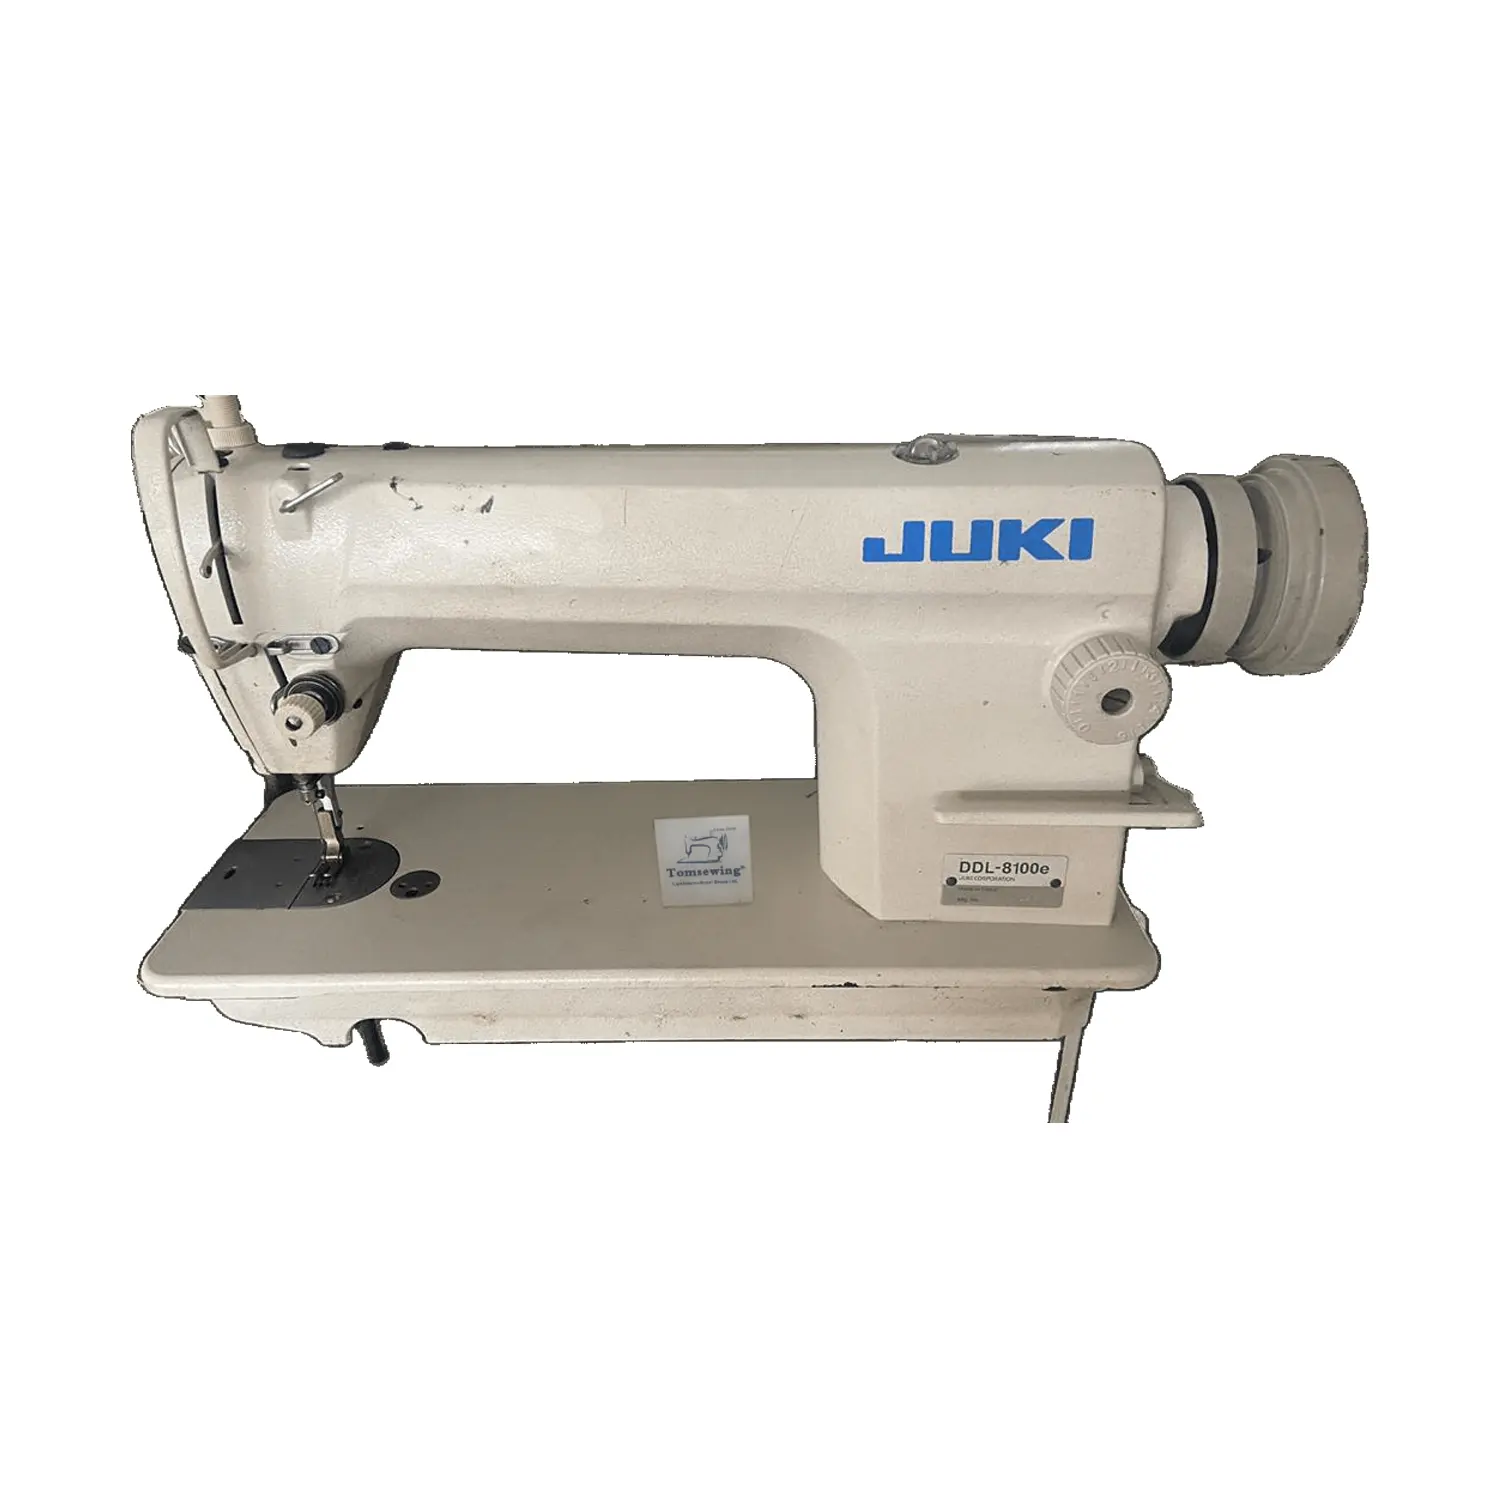 일본-Juki-DDL 8100 가격 사용 재봉틀 중고 Maquinas 드 Coser Industriales for Juki 중국 토미싱